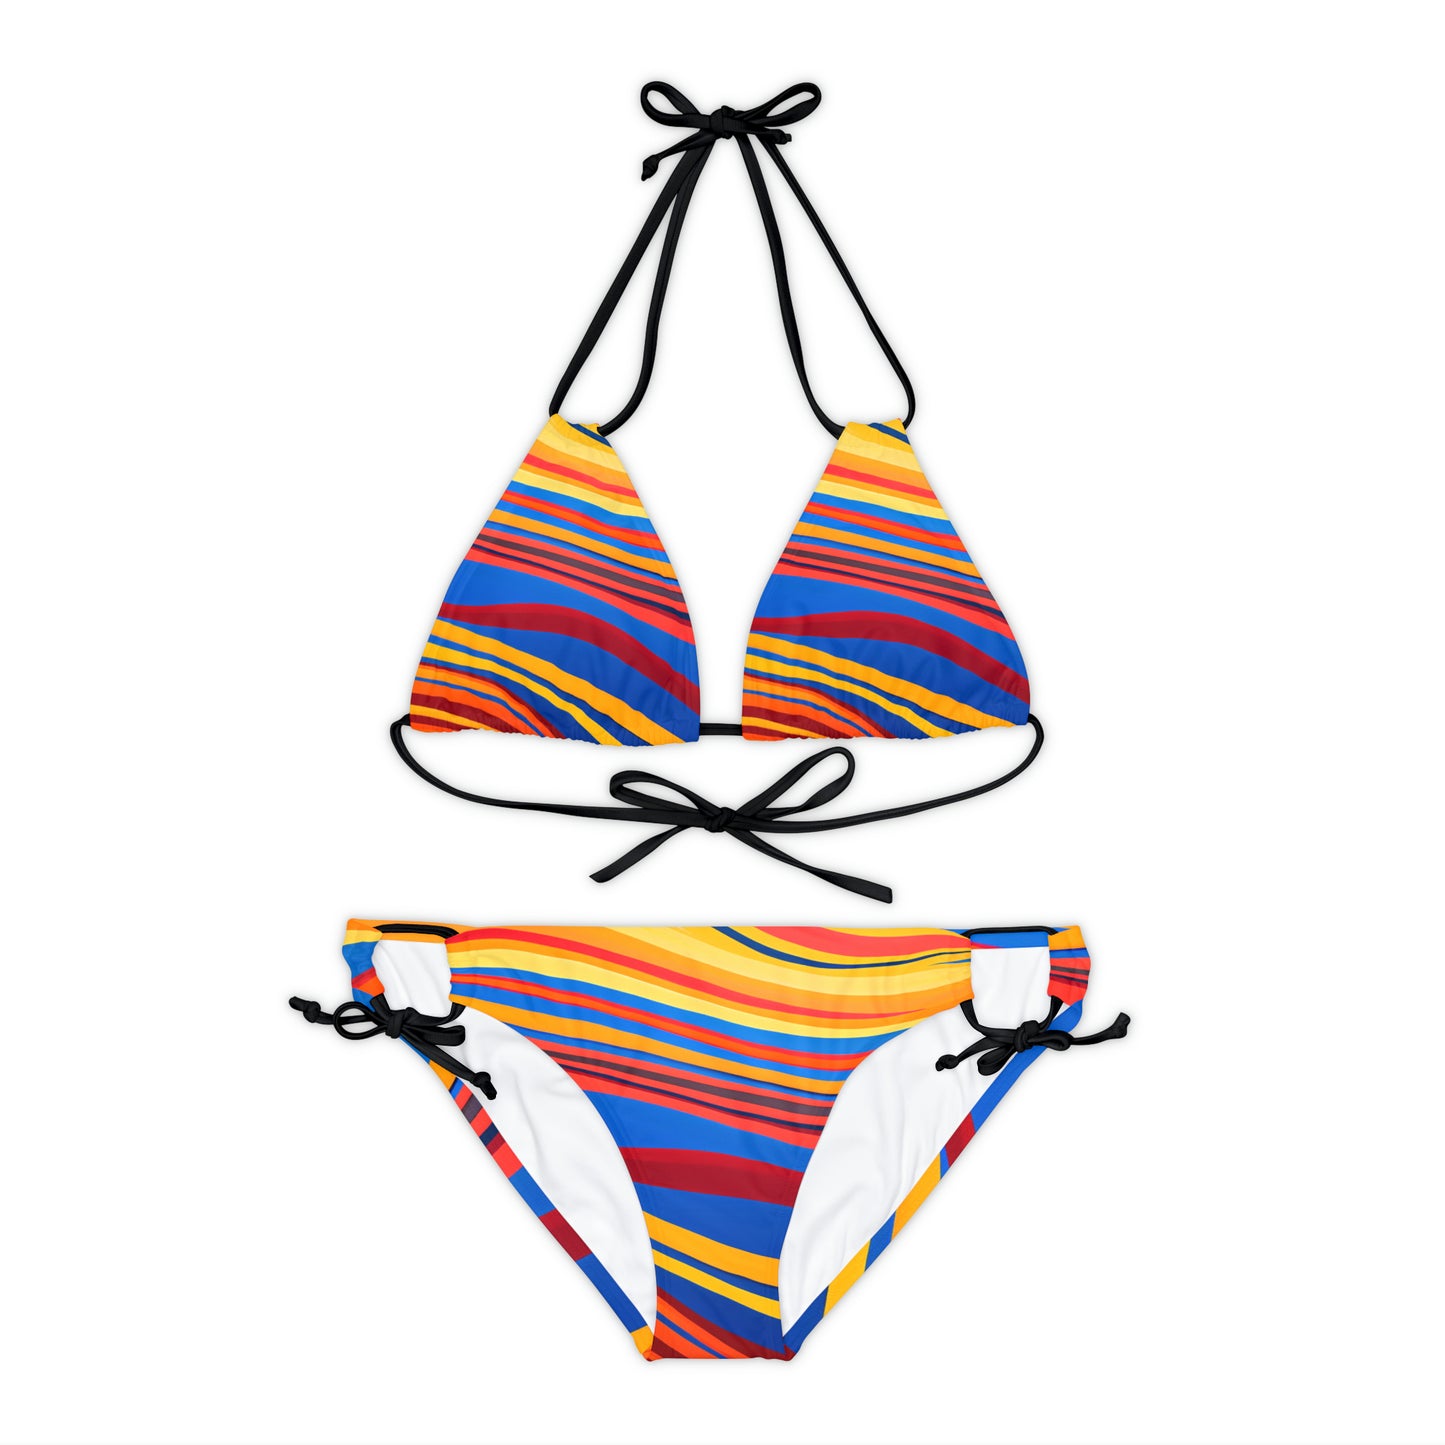 Flowy Stripes Strappy Bikini Set